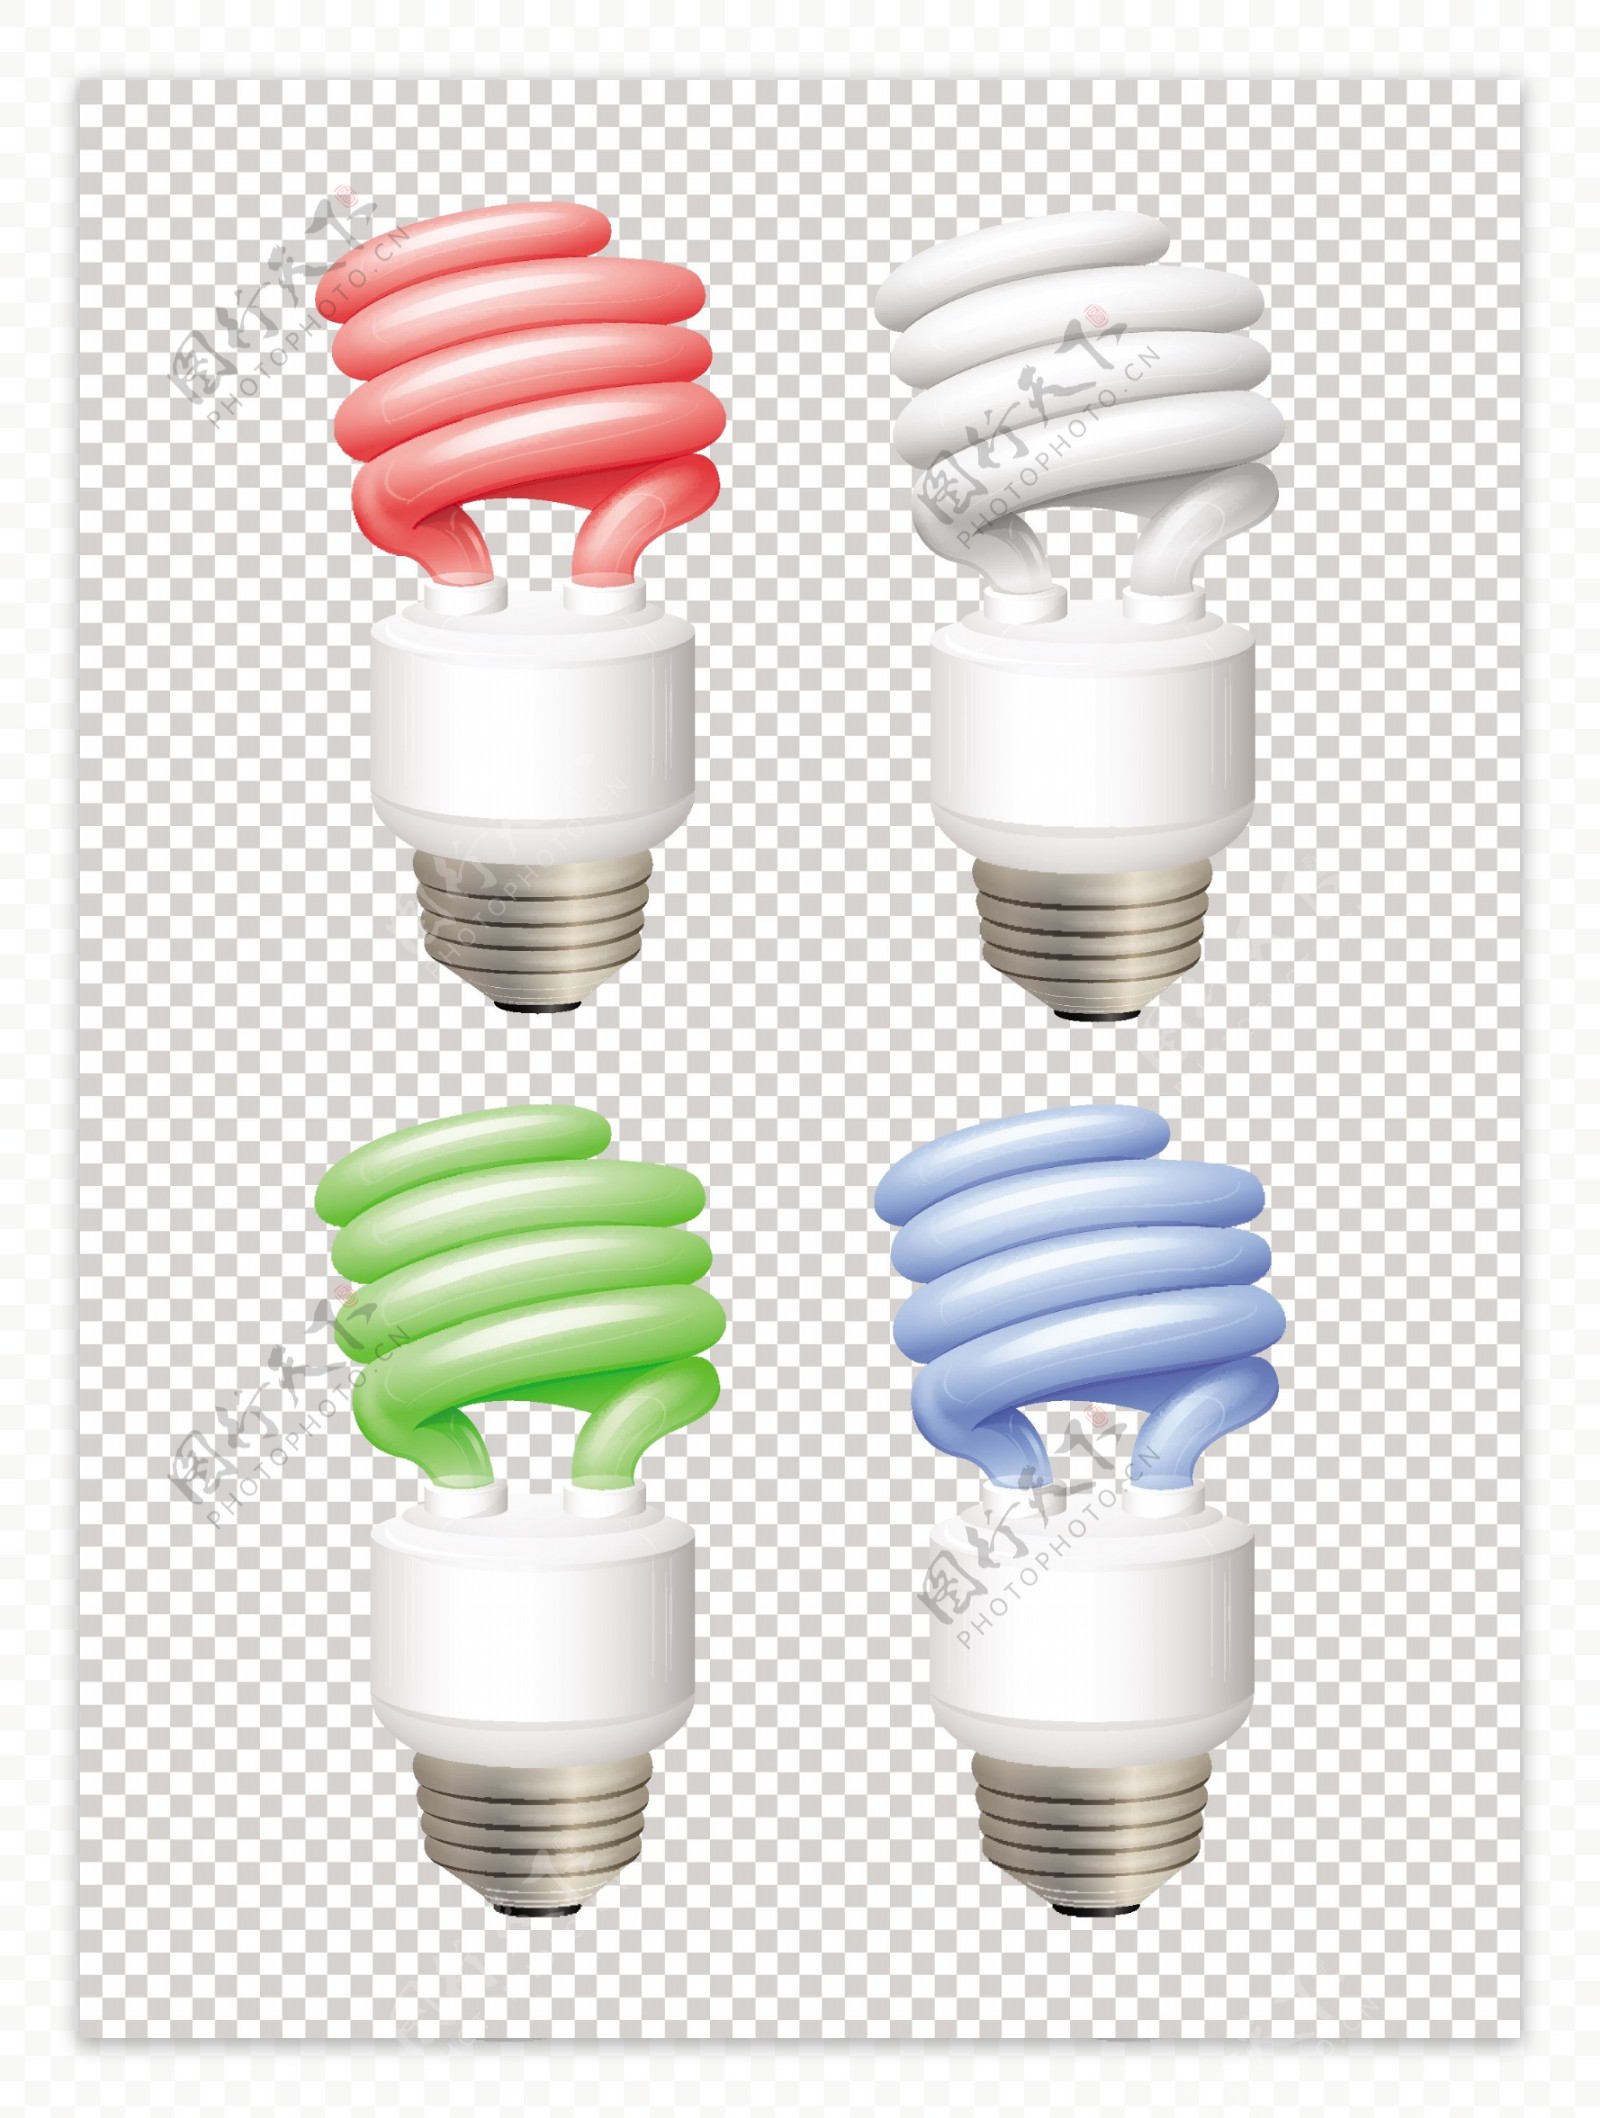 不同颜色的灯泡节能灯透明背景图